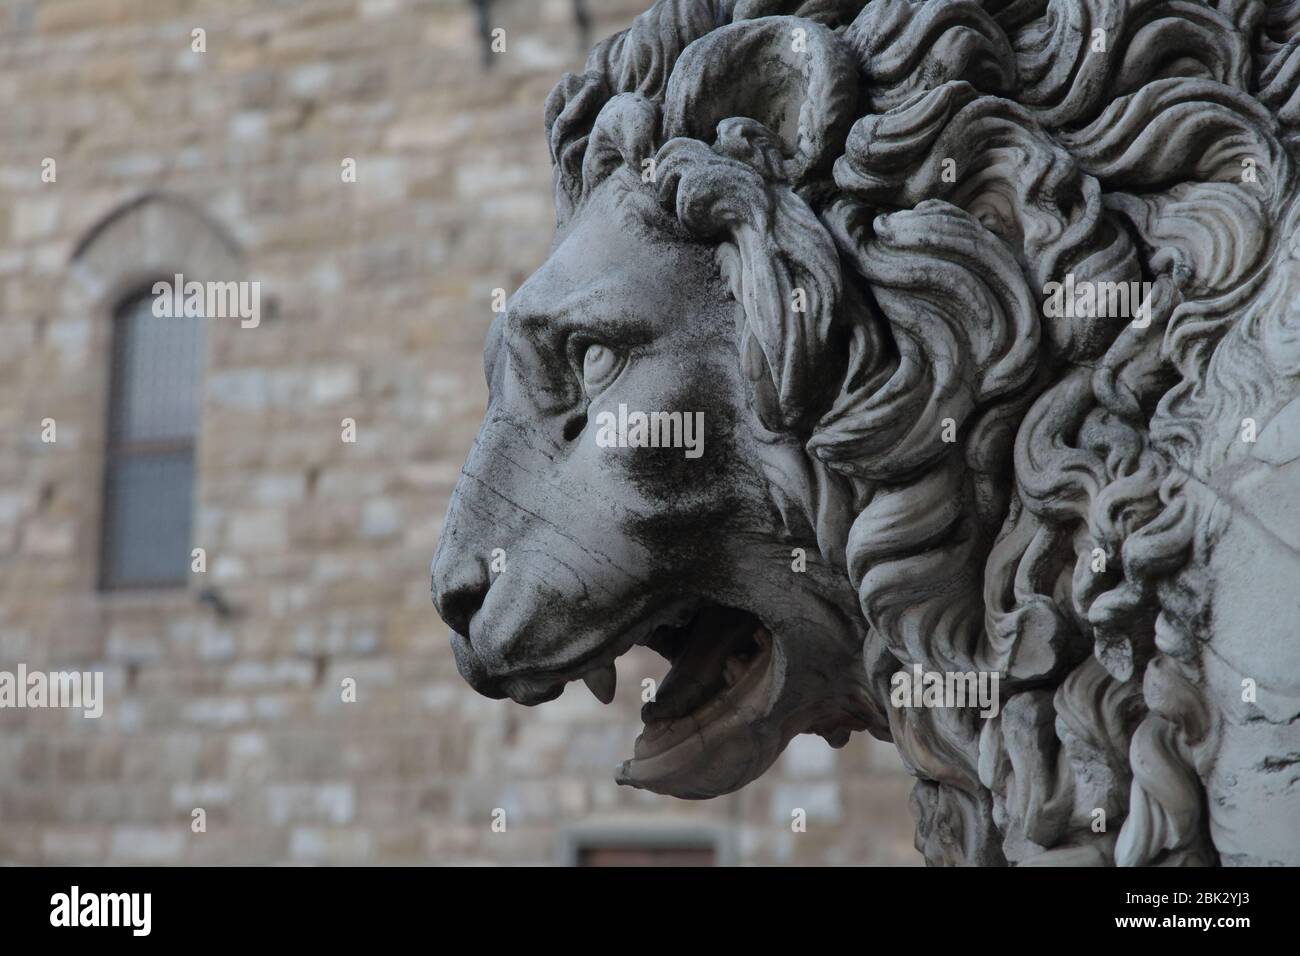 FIRENZE, ITALIA - Maggio 23 2019: Piazza della Signoria, particolare del leone Foto Stock